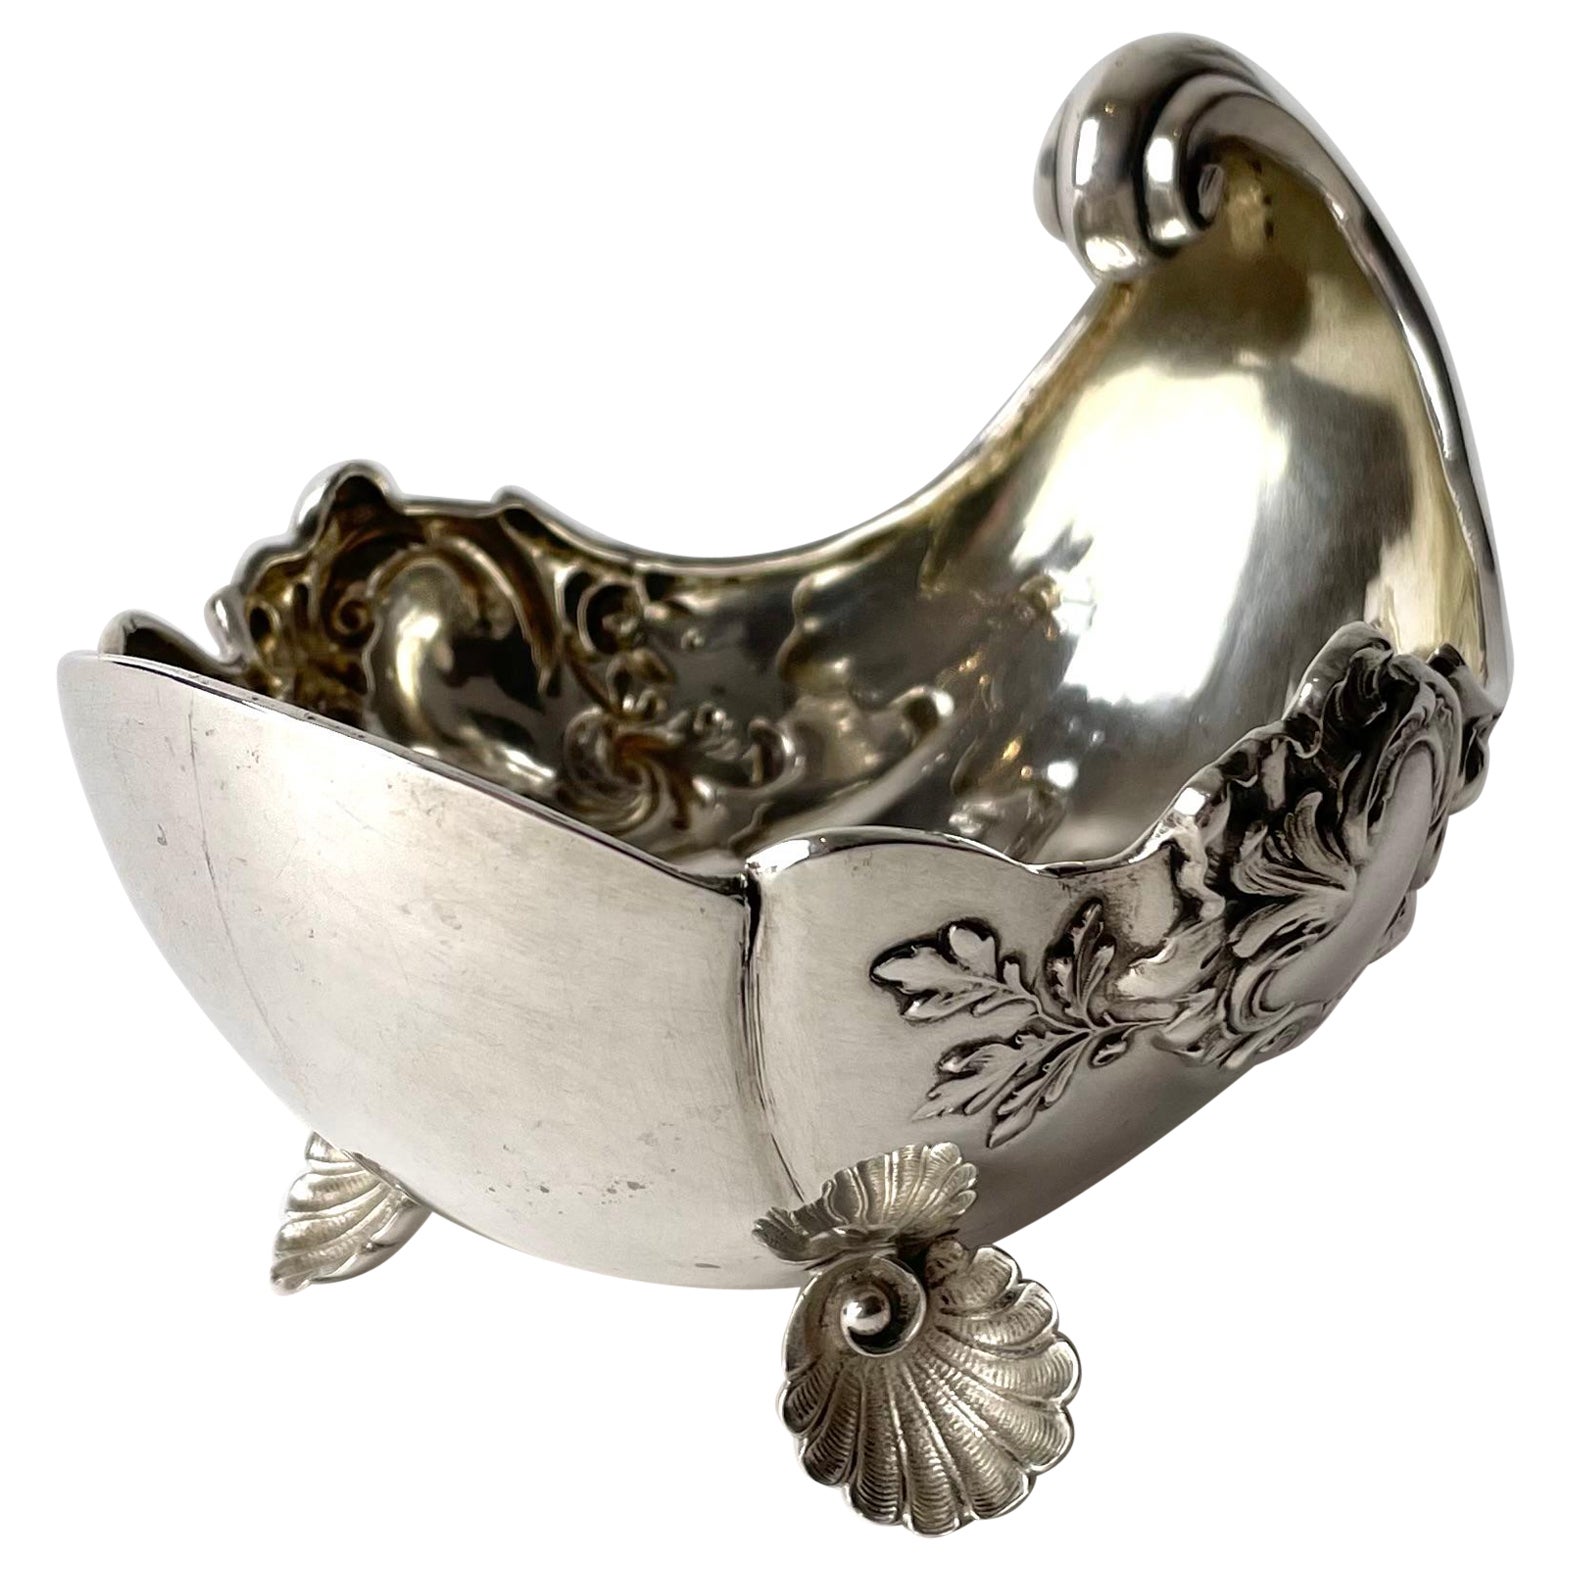 Magnifique bol à bonbons en argent en forme de coquillage du milieu du 19ème siècle